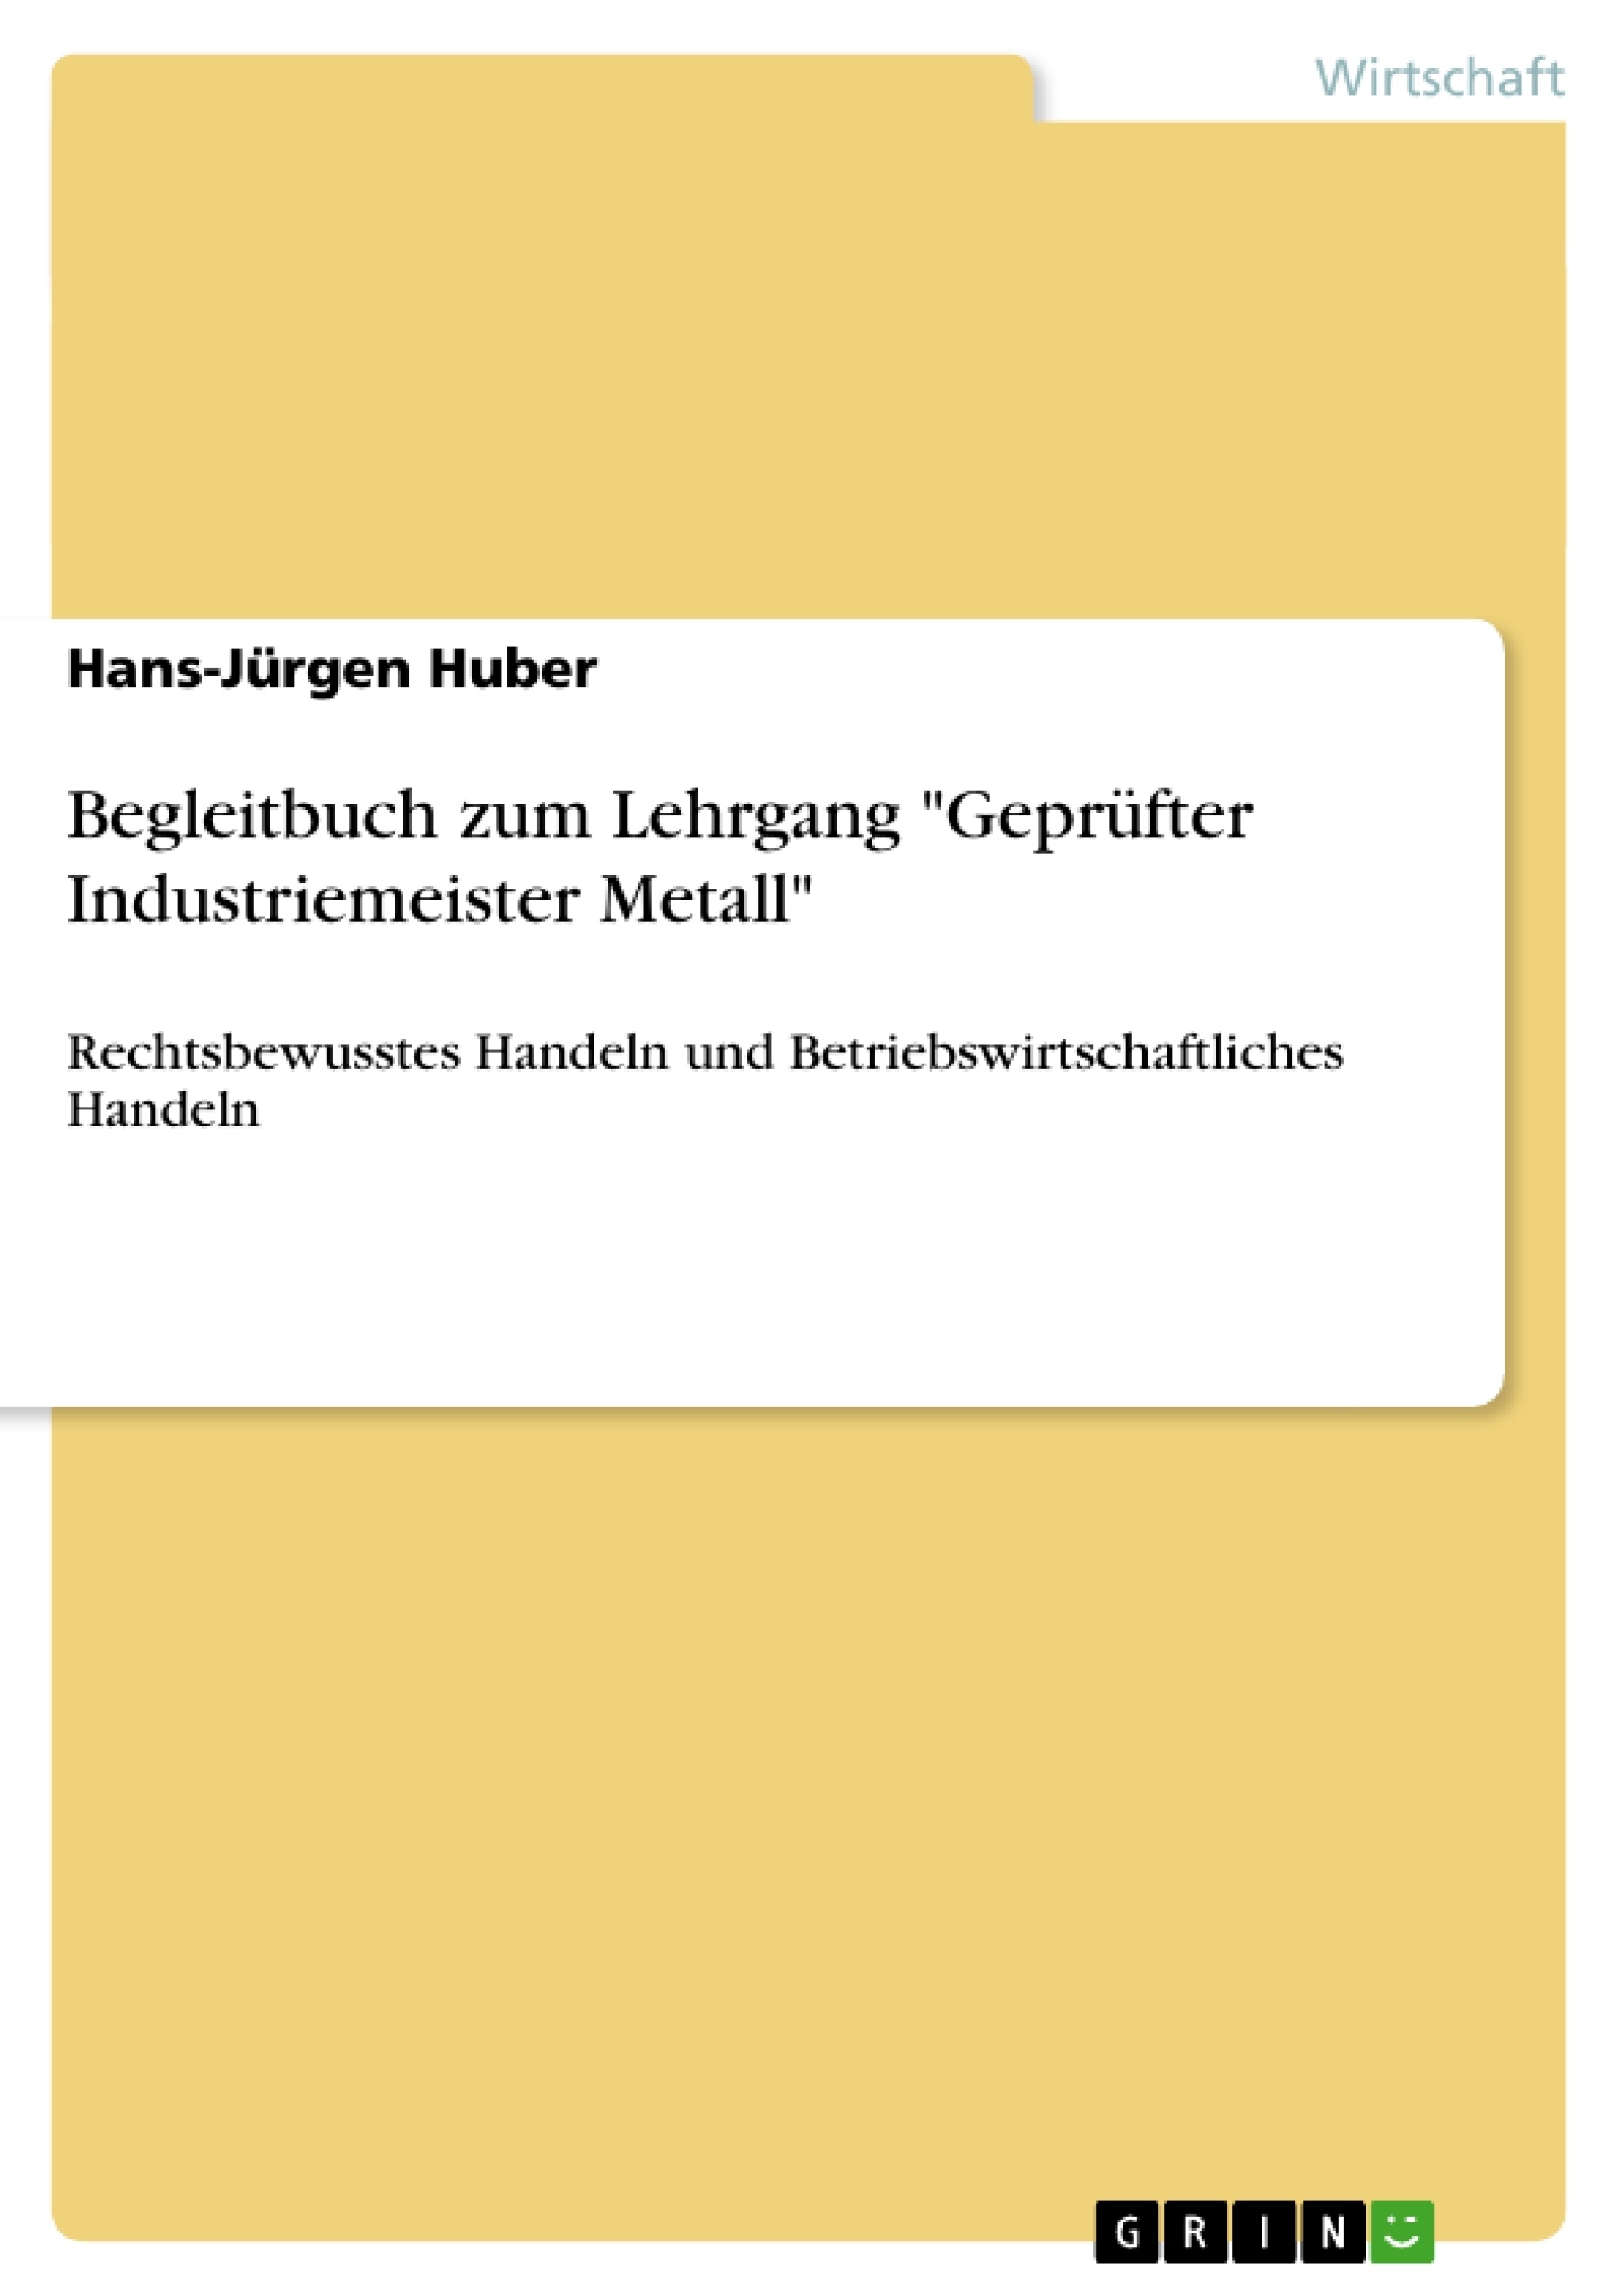 Title: Begleitbuch zum Lehrgang "Geprüfter Industriemeister Metall"